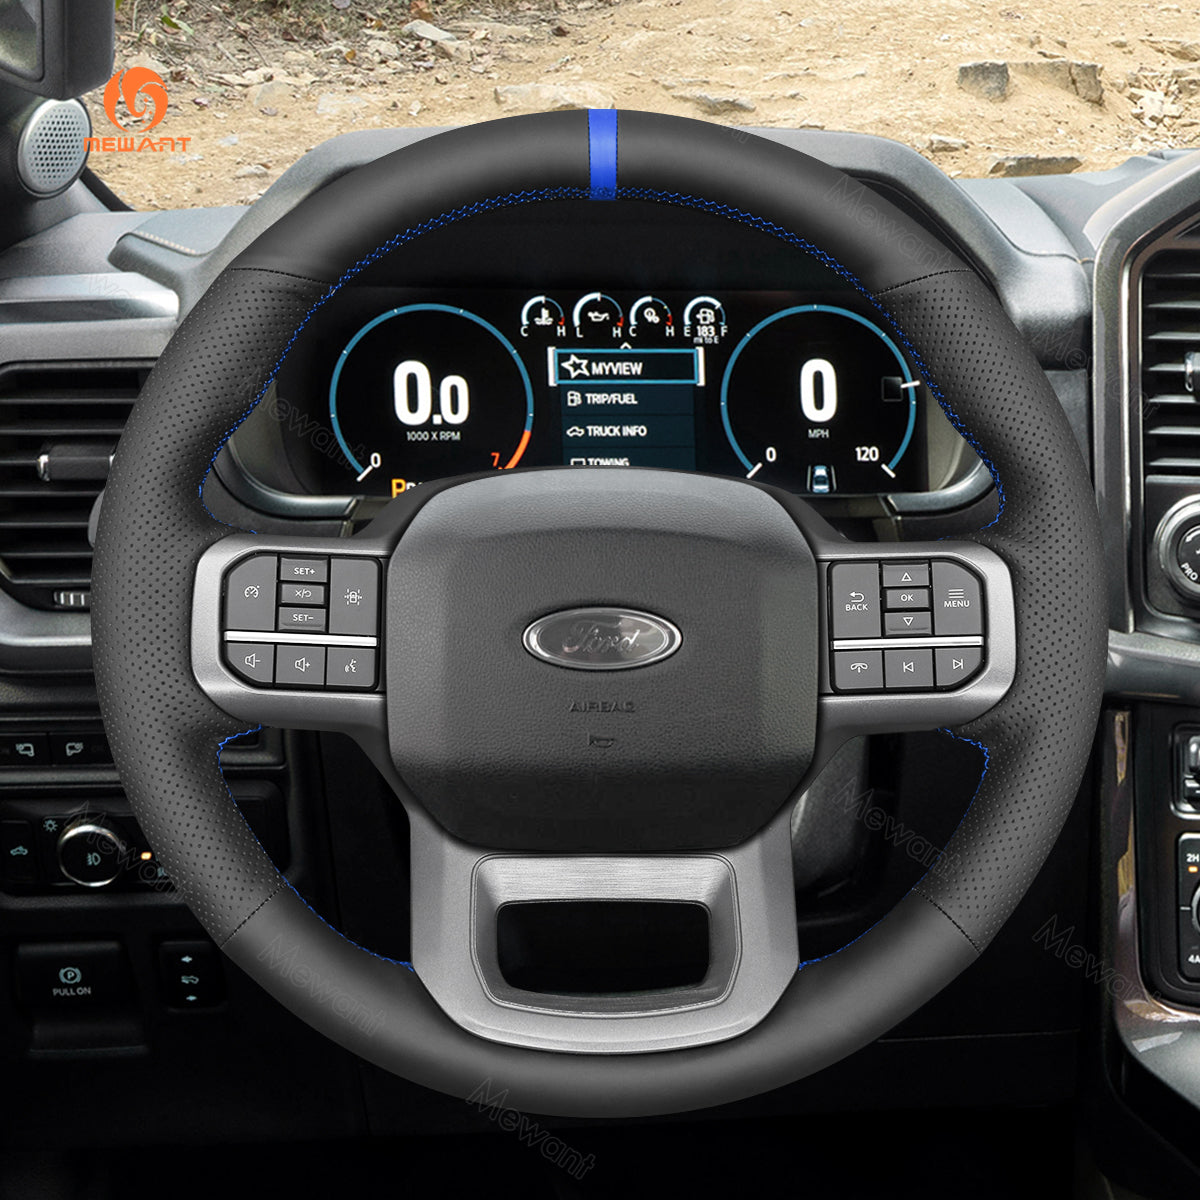 Car steering wheel cover for Ford F-150 Lightning